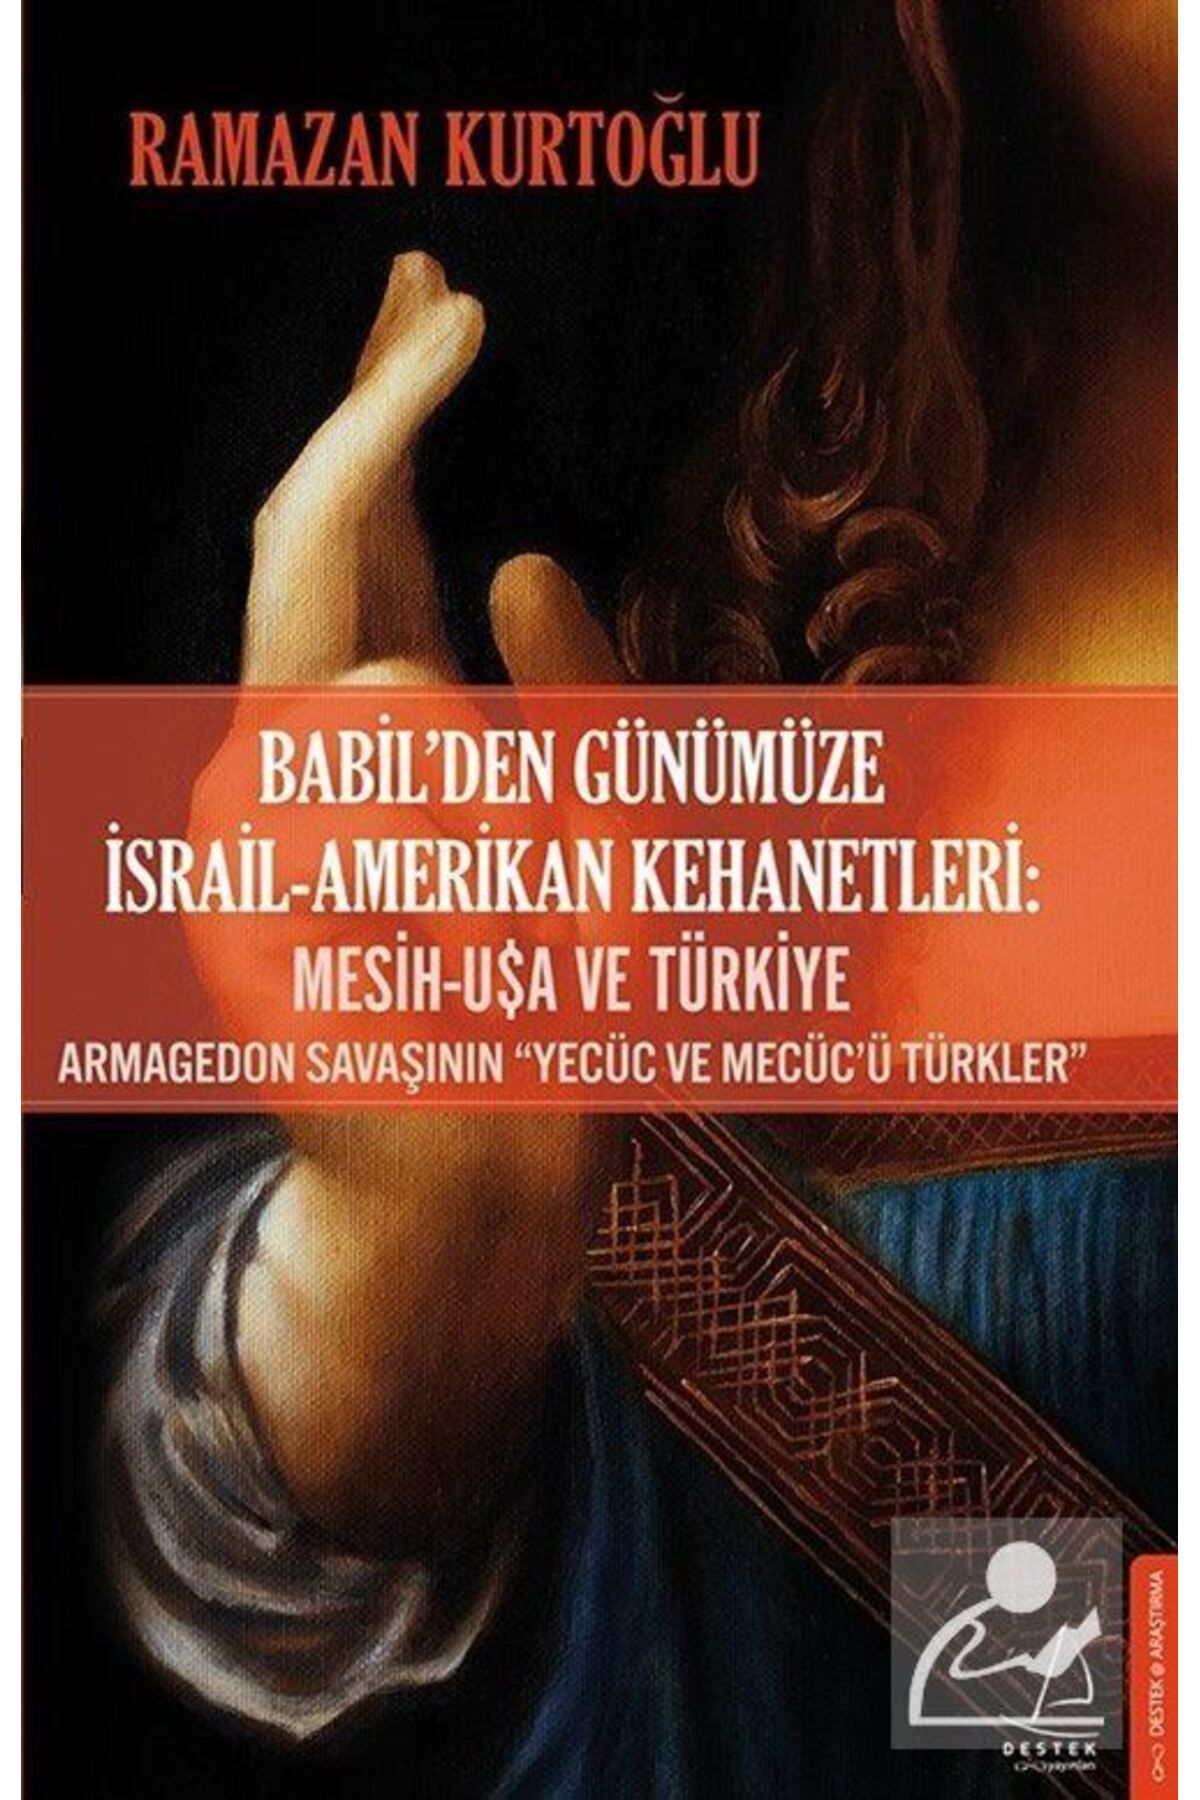 Destek Yayınları Babil'den Günümüze Israil-amerikan Kehanetleri